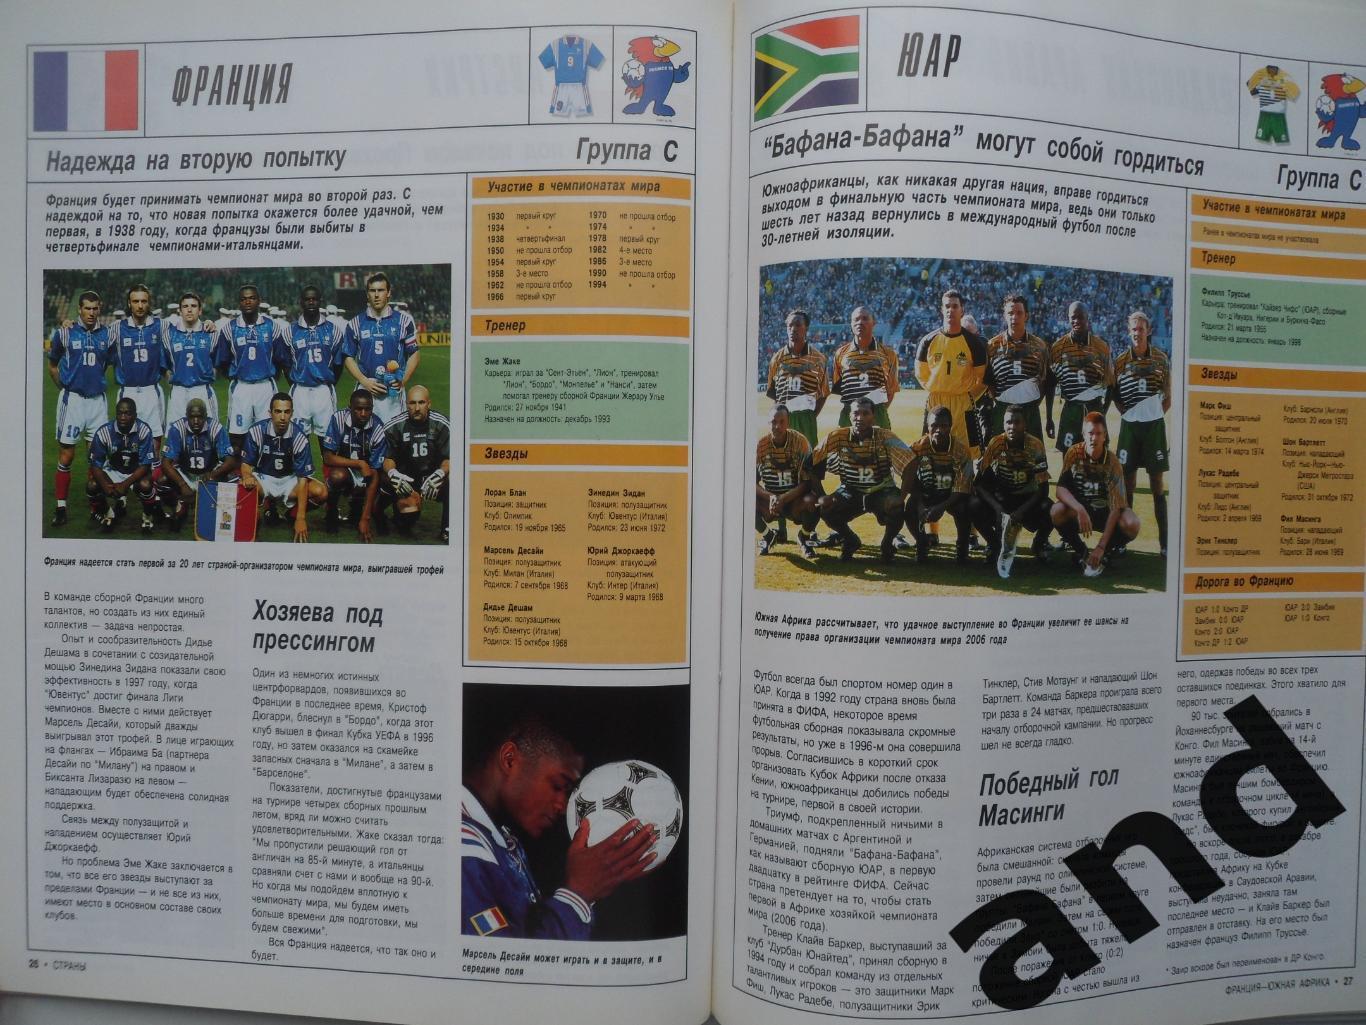 фотоальбом Чемпионат мира по футболу 1998 г 7